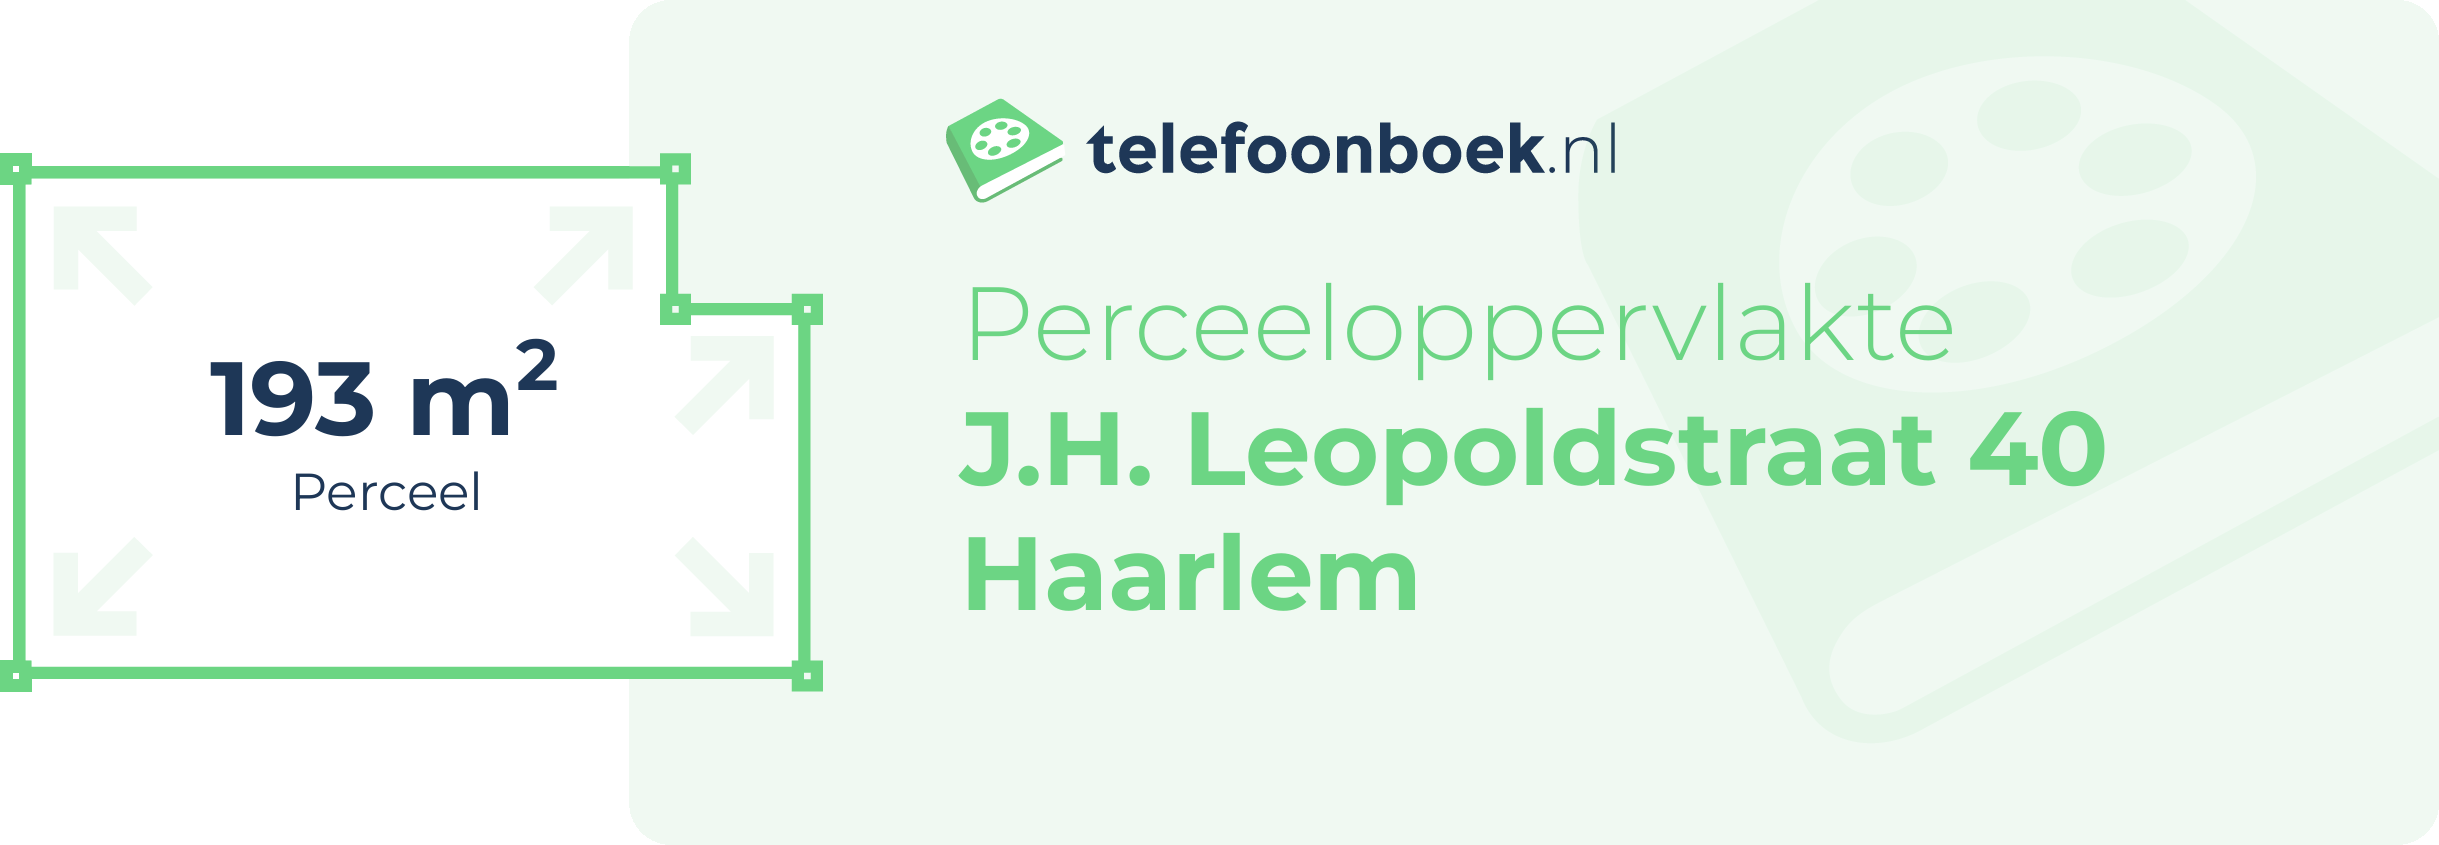 Perceeloppervlakte J.H. Leopoldstraat 40 Haarlem